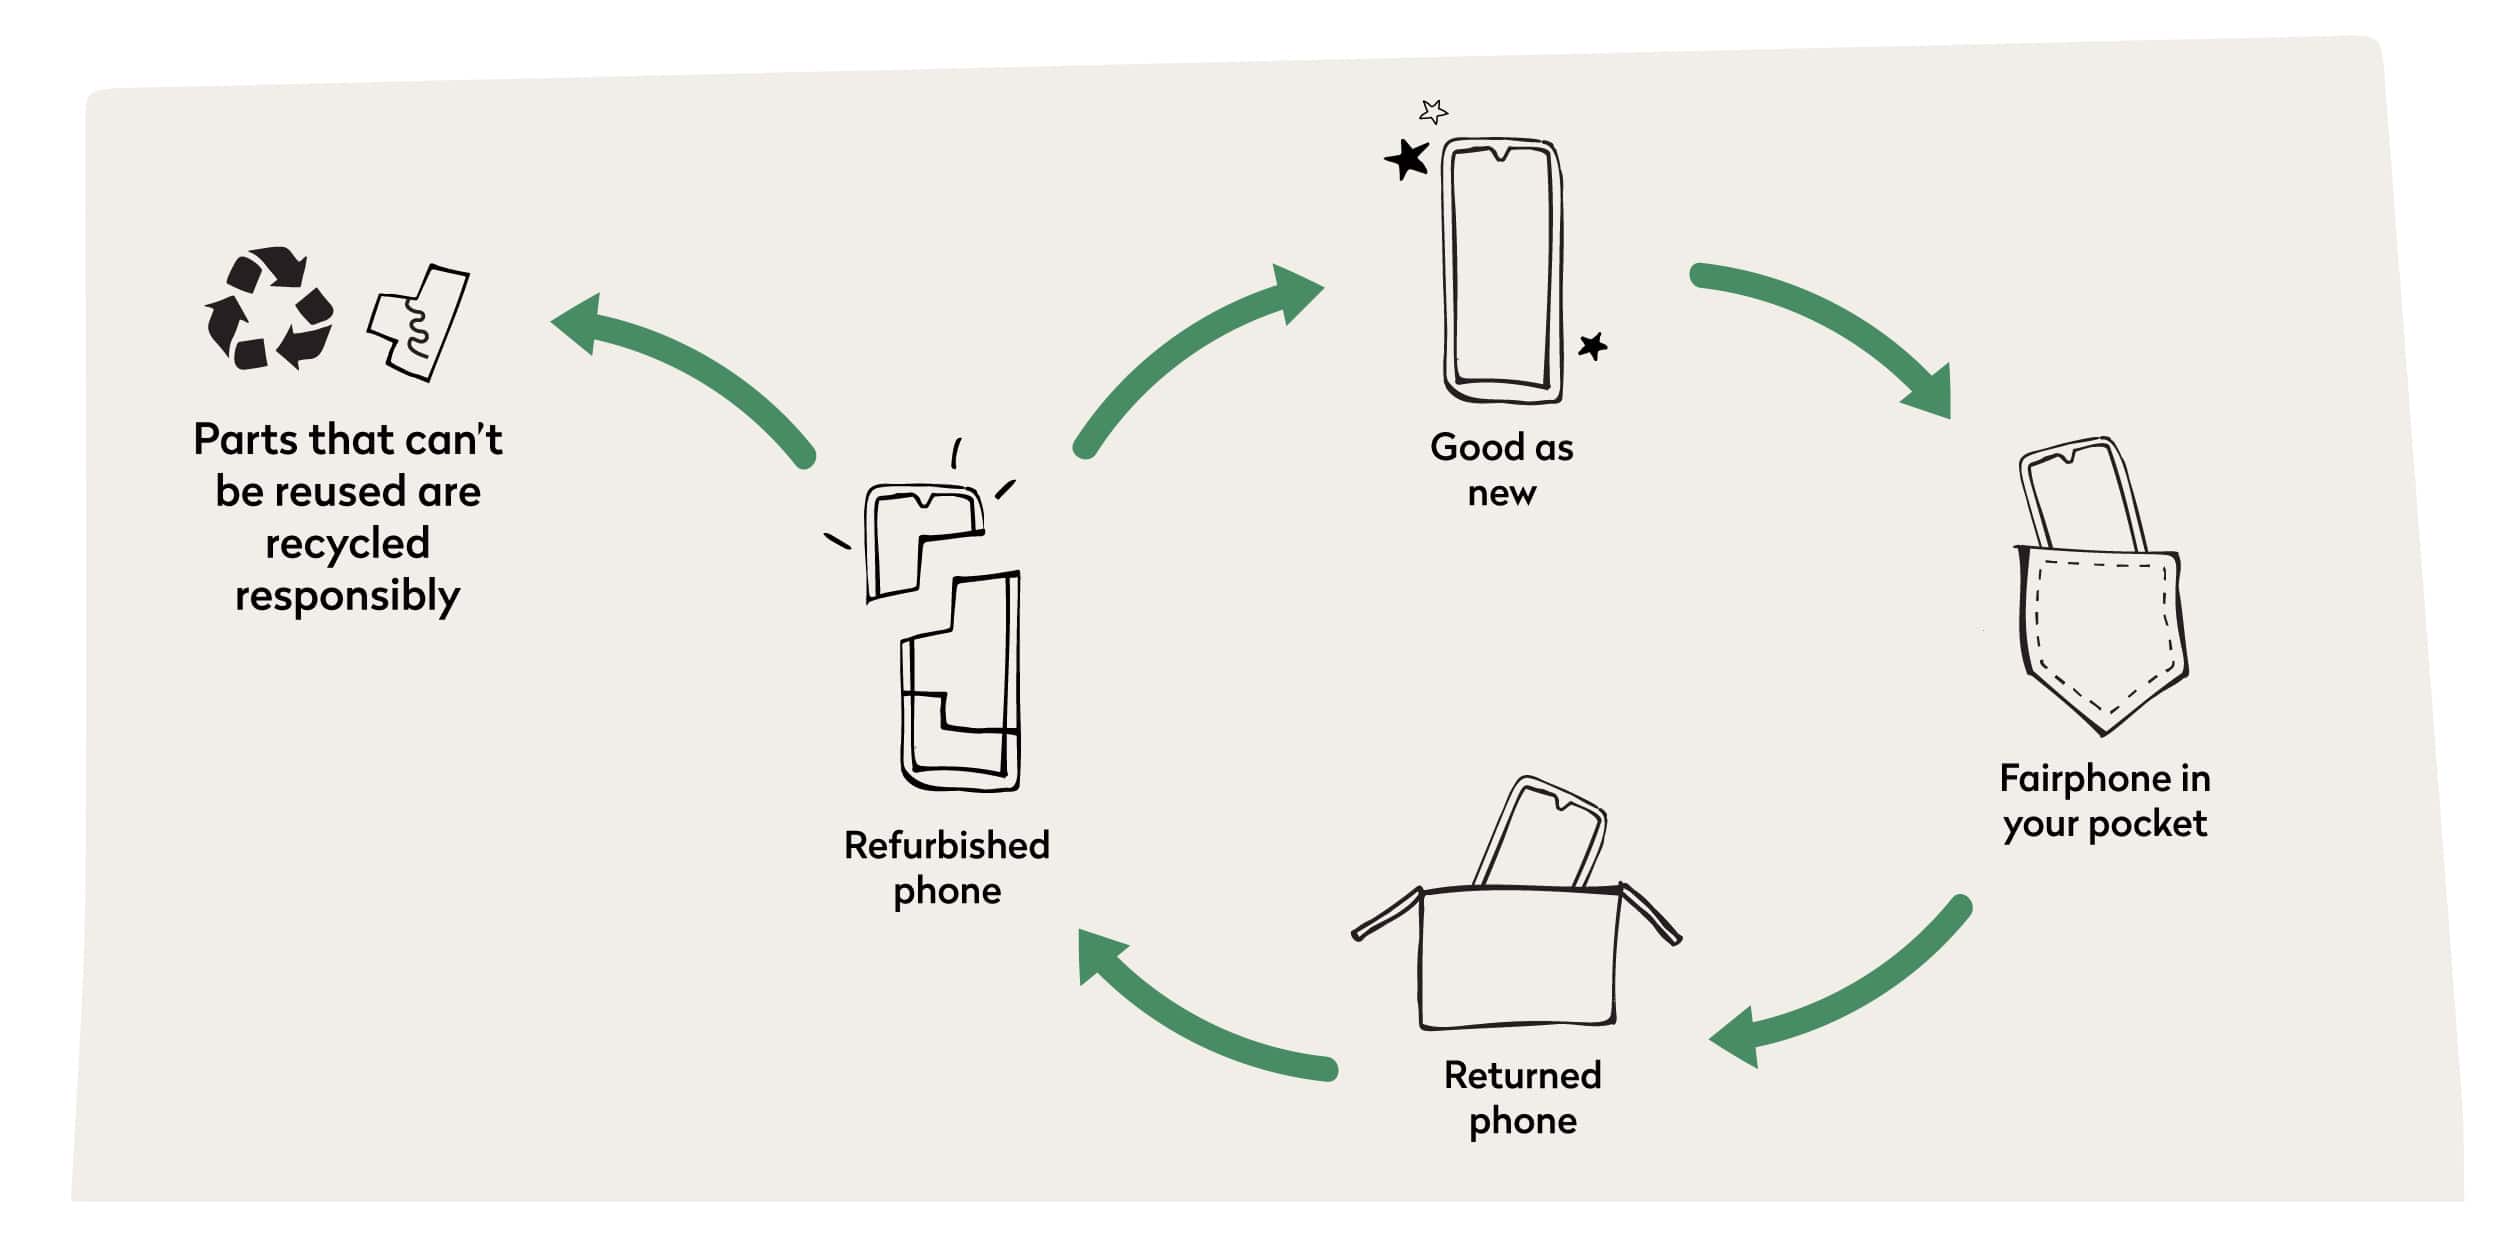 How Fairphone Easy works